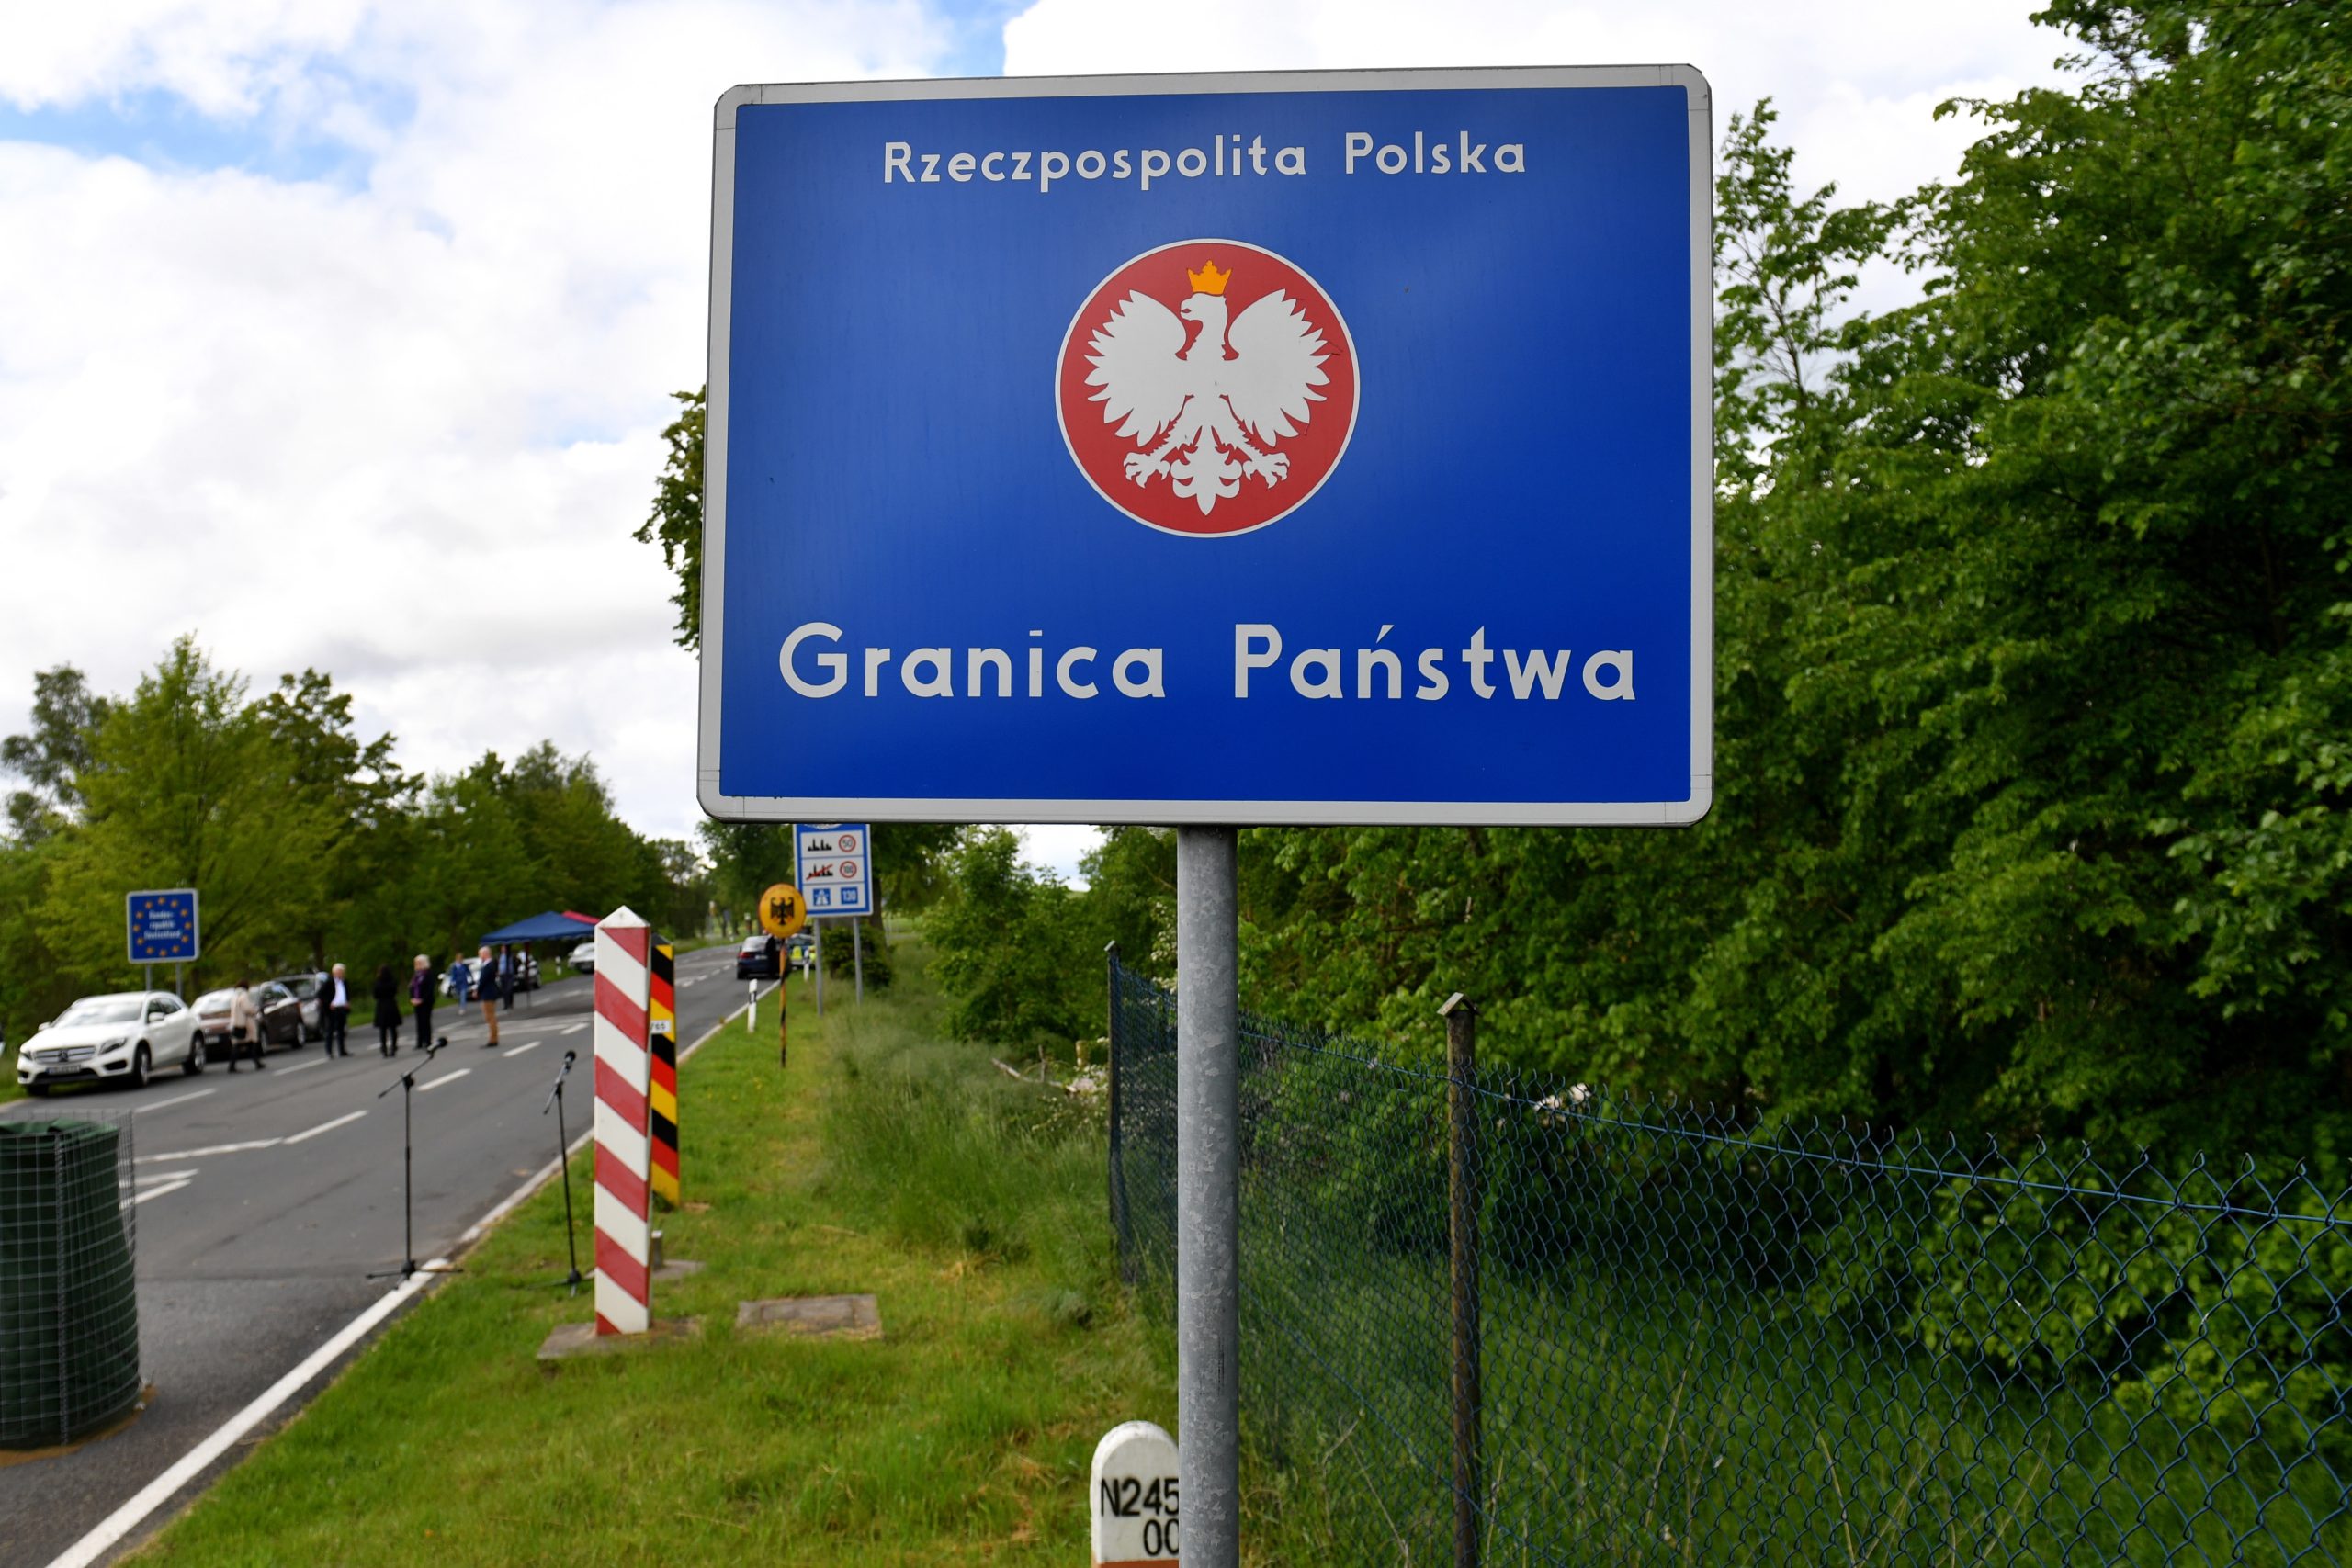 Поглиблення кризи міграції: Польща привела в готовність прикордонні війська